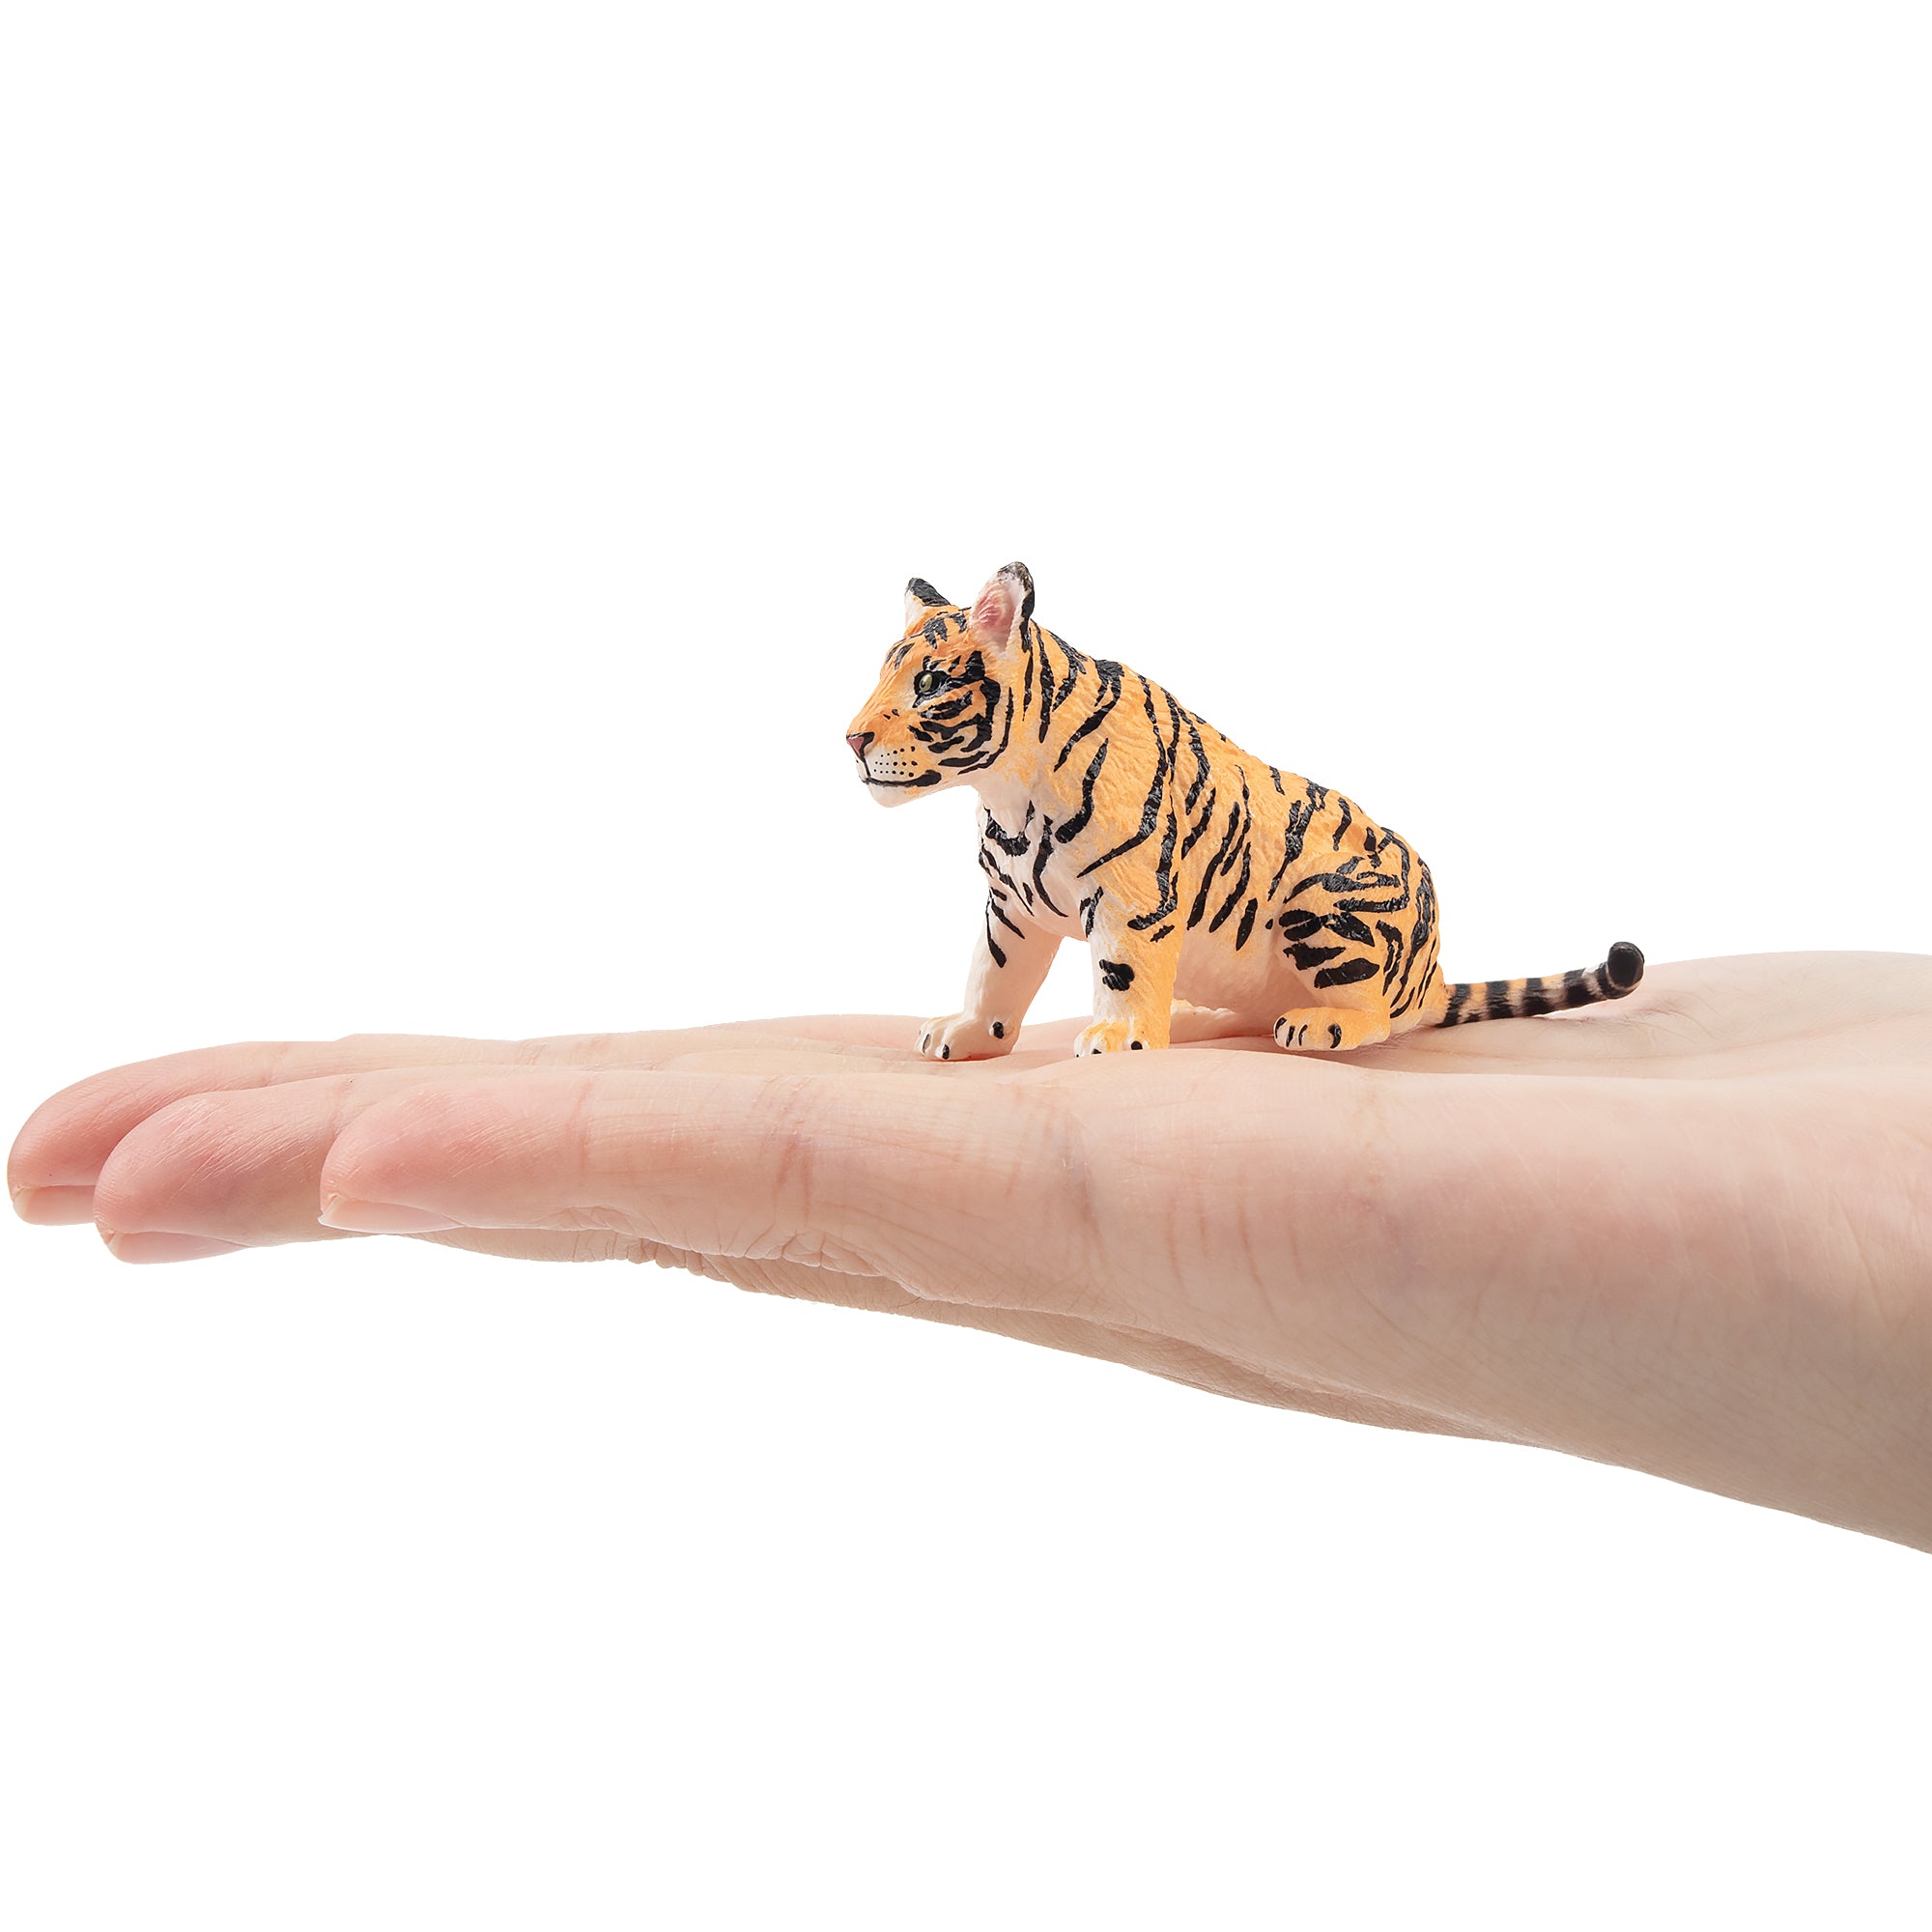 Toymany Tiger Cub Figurine Toy-on hand